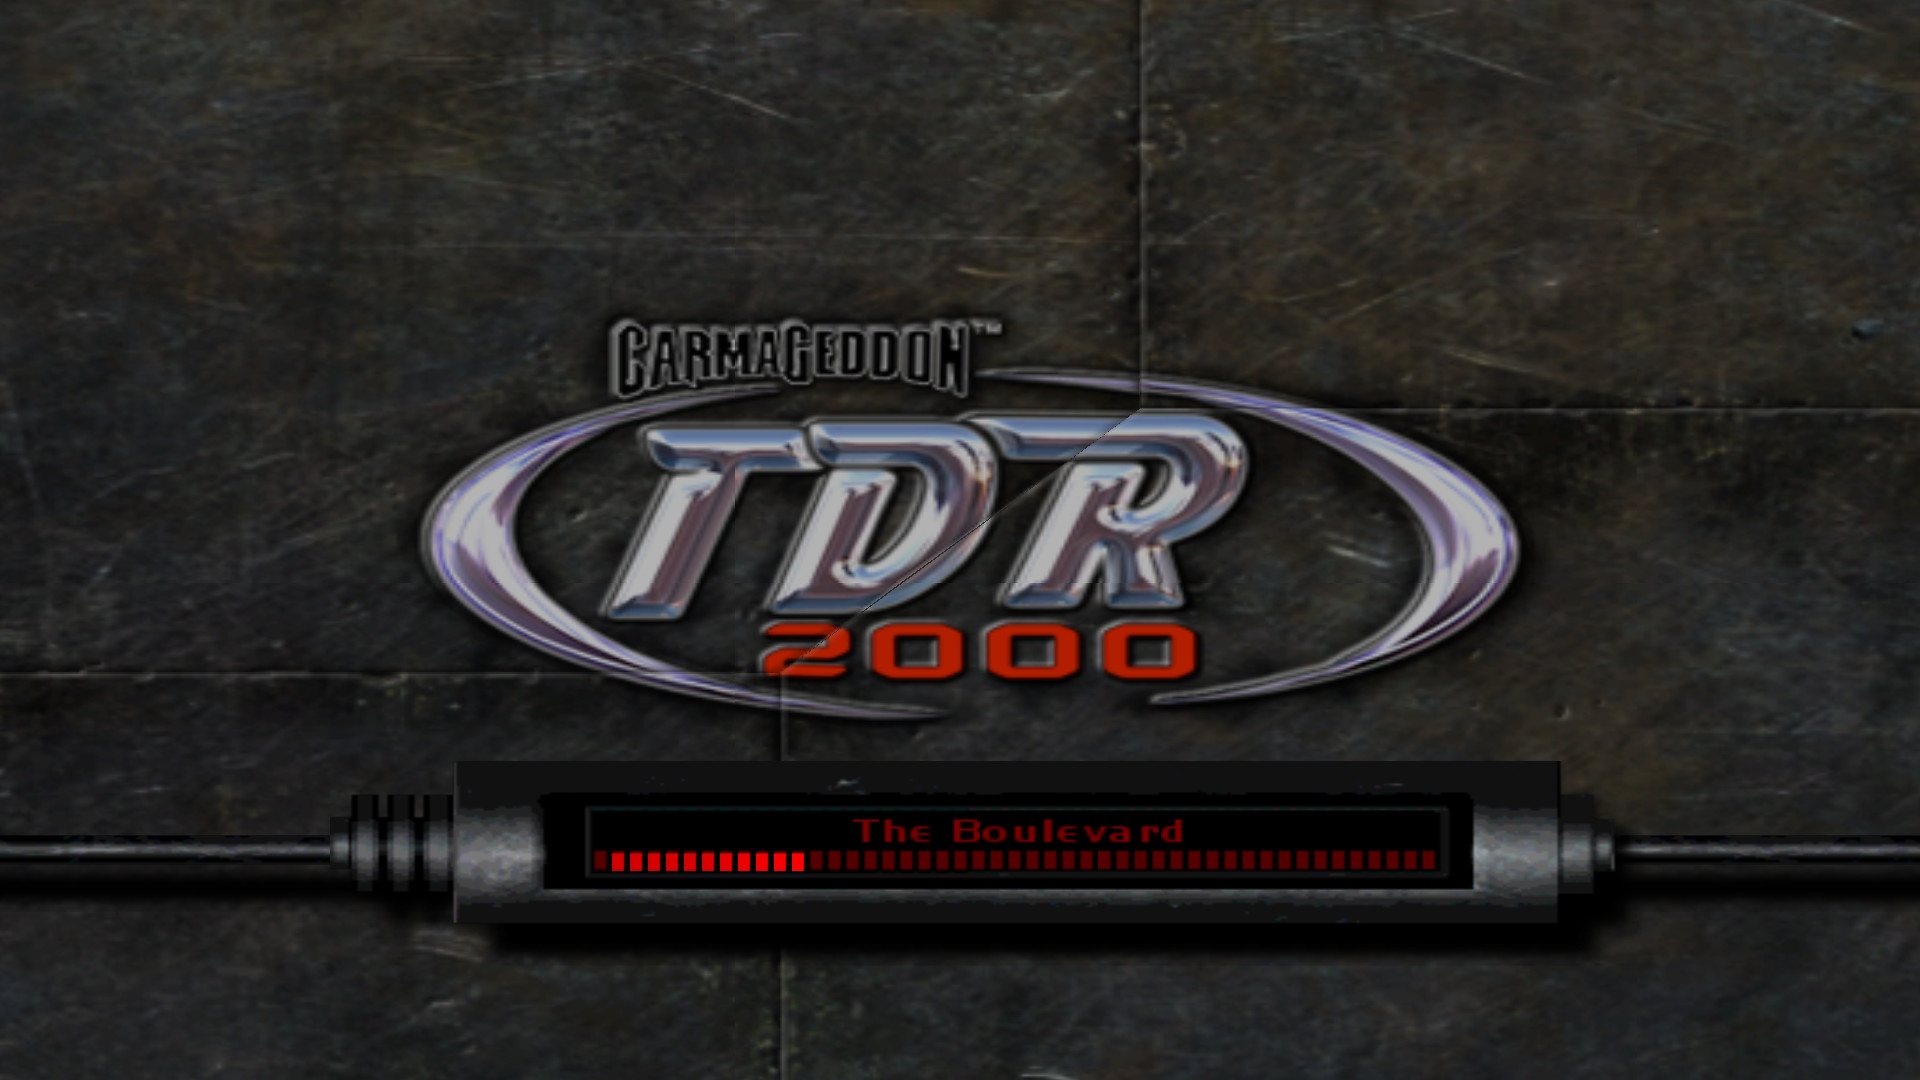 Carmageddon TDR 2000 Steam Gift, $3.13